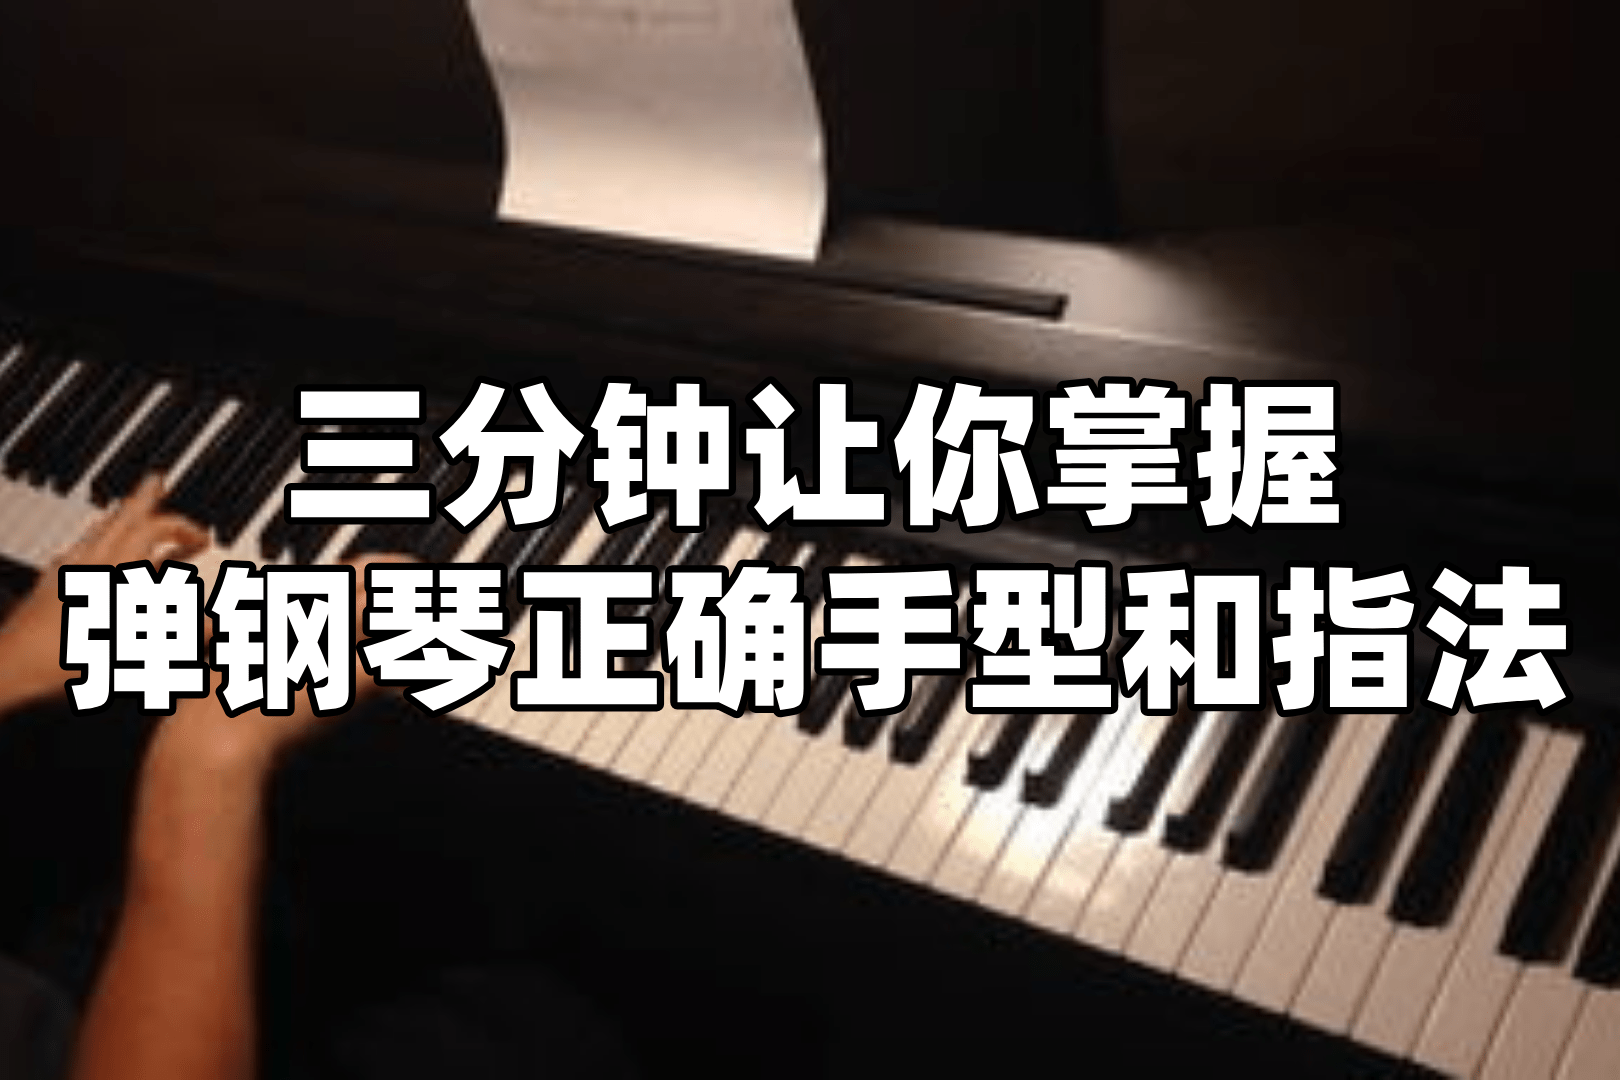 弹钢琴手势视频教程(钢琴初学手势视频教程)